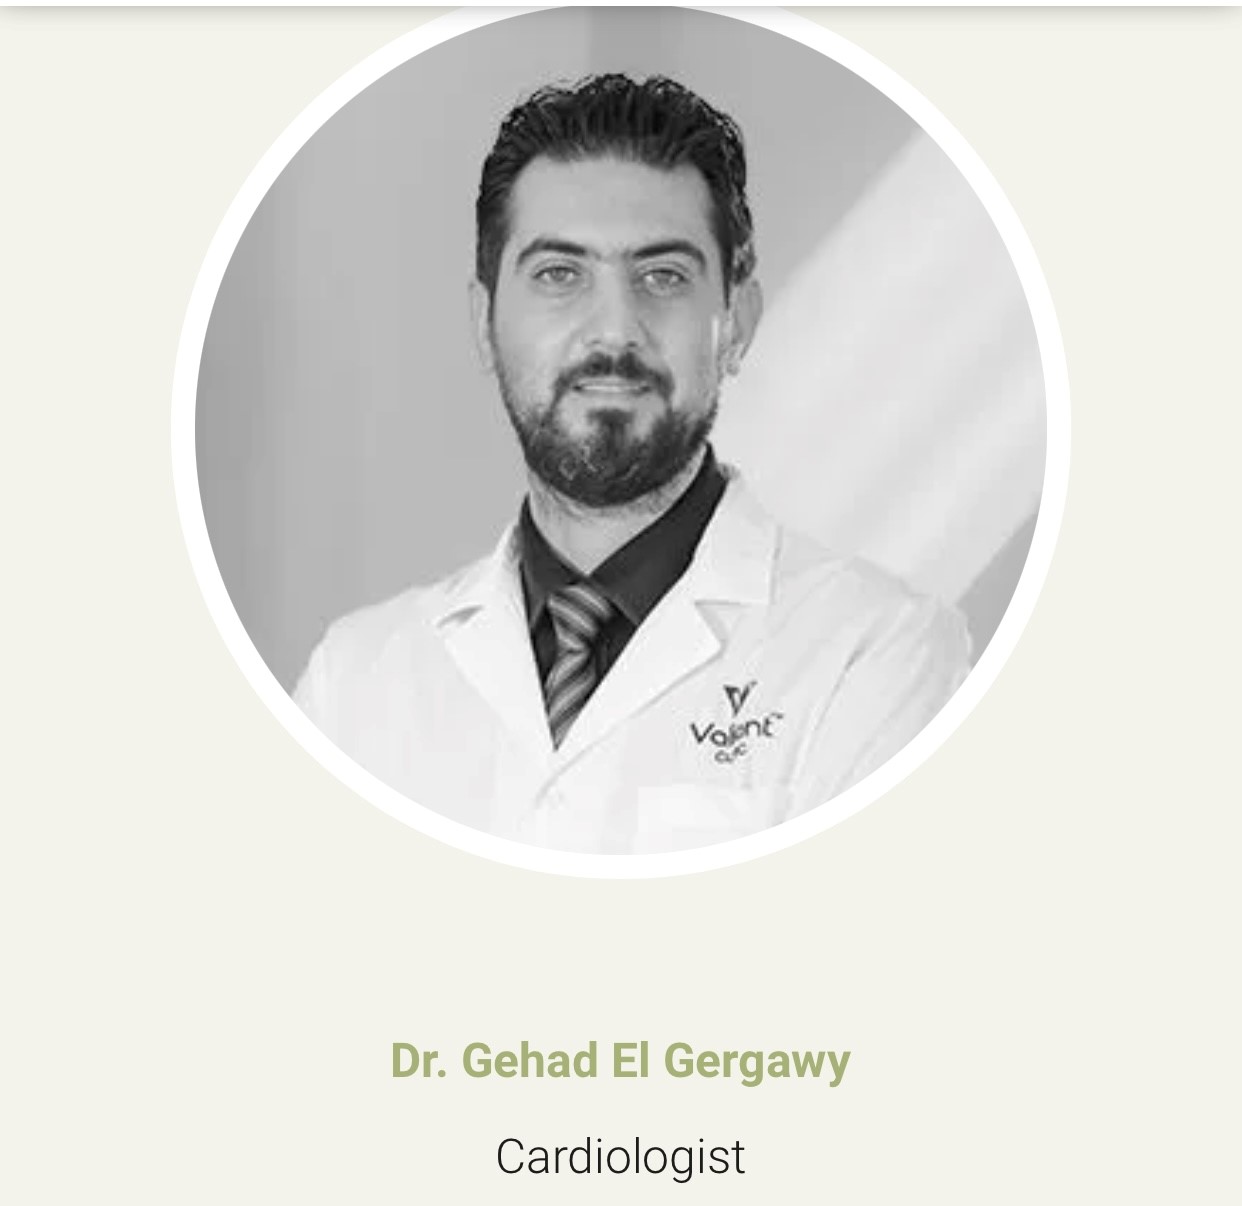 Dr. Gehad El Gergawy